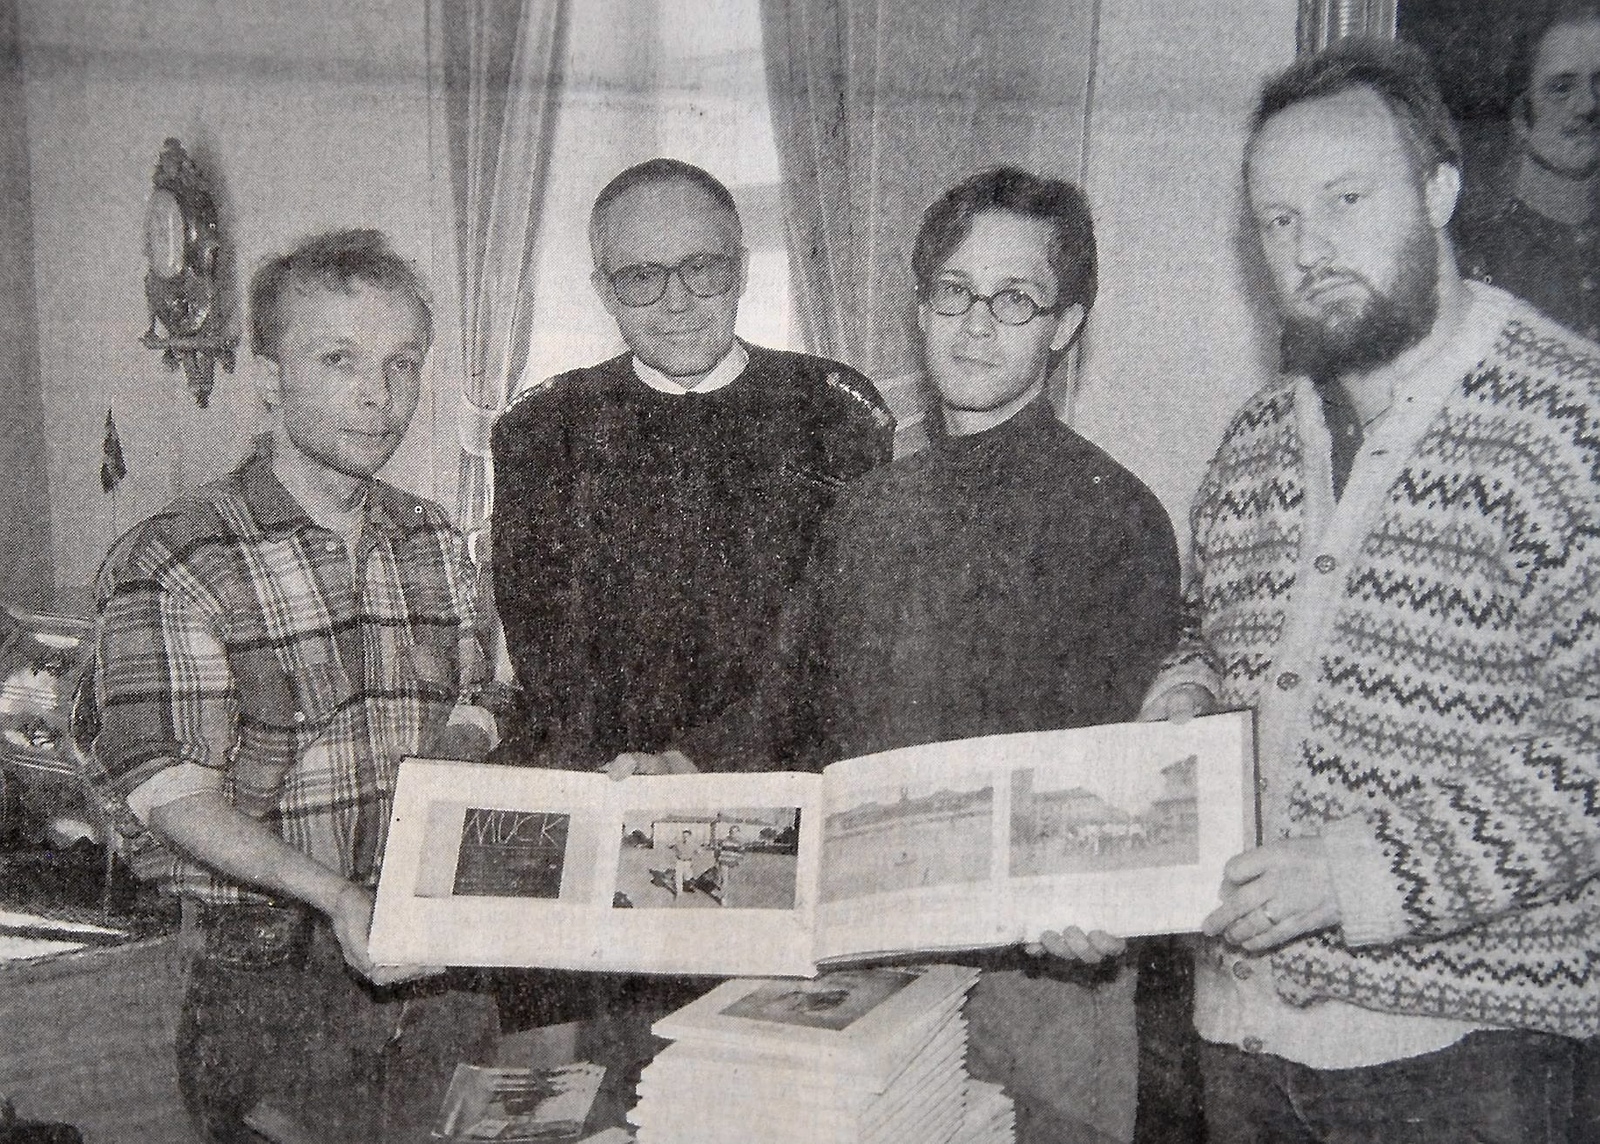 Männen bakom verket är, från vänster Rick Forsling, överste Åke Johansson, Henrik Björnsson och Bengt Månsson.
Arkiv: Olle Andersson